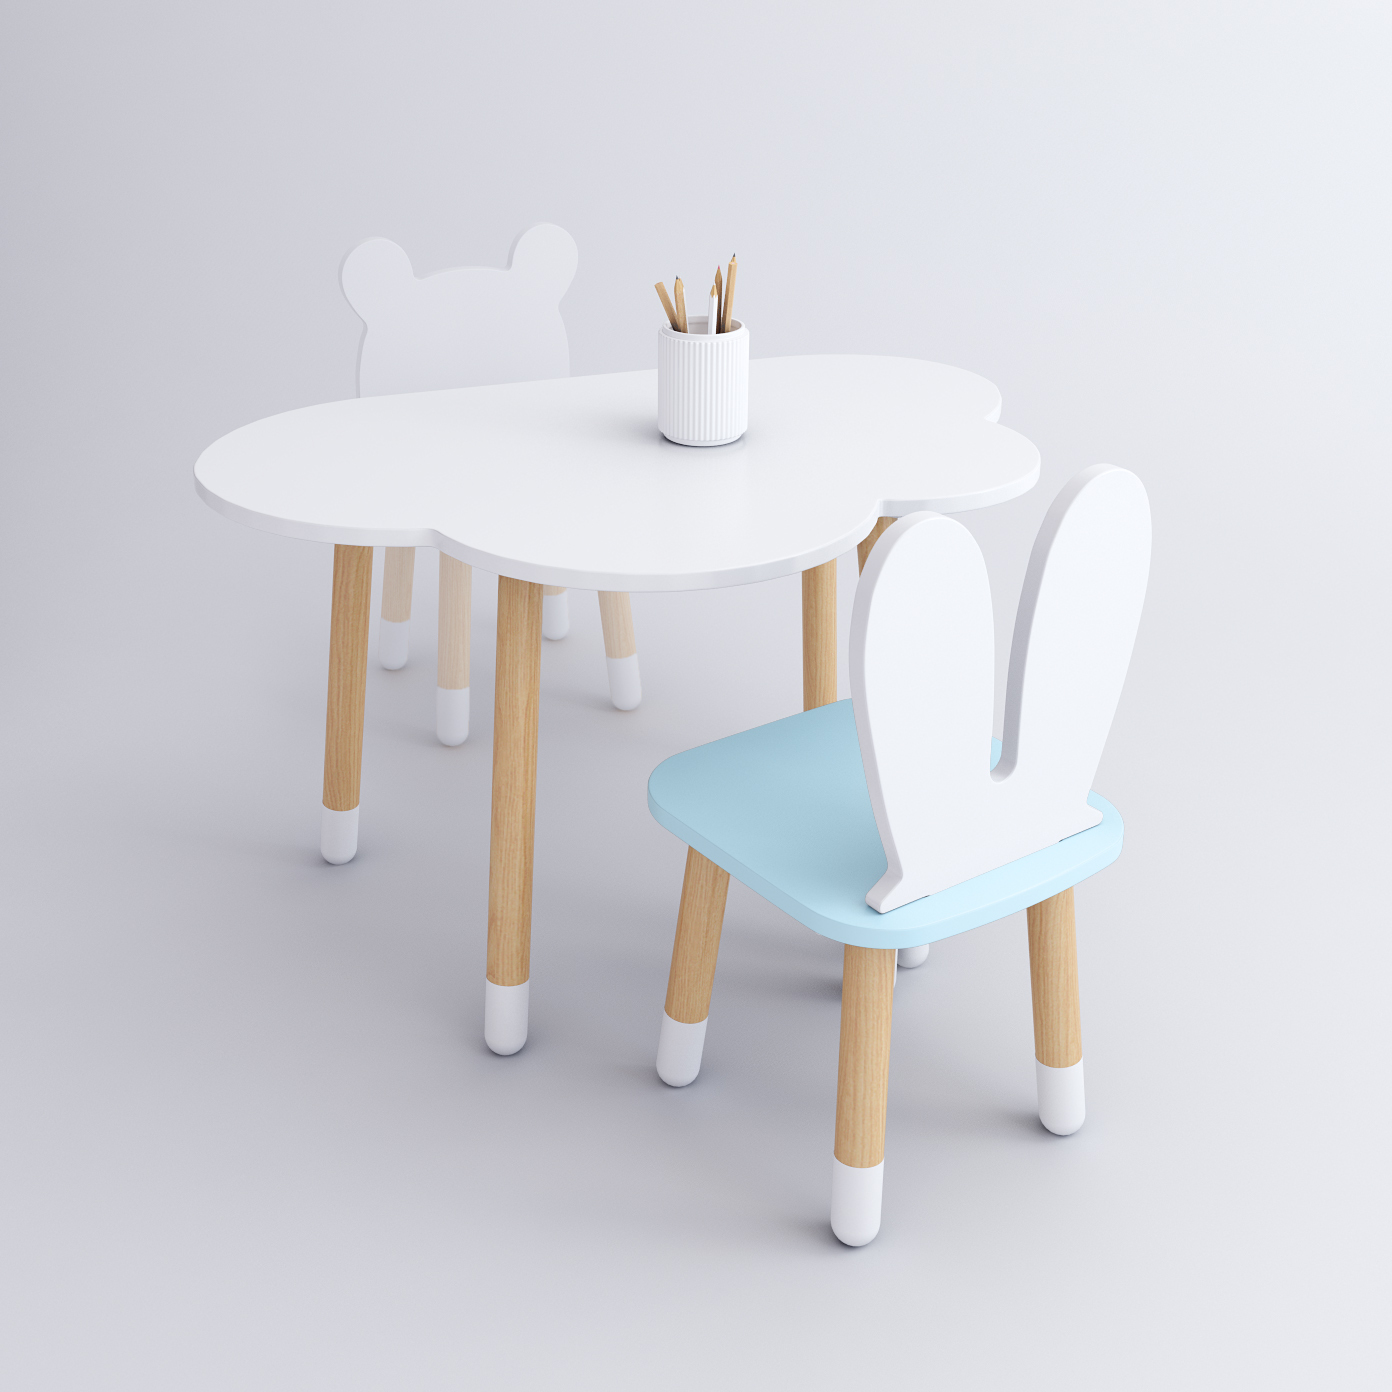 Комплект детской мебели DIMDOM kids, стол Облако белый, стул Зайка голубой комплект детской мебели rules столик облачко и стульчик зайка белая и розовая эмаль